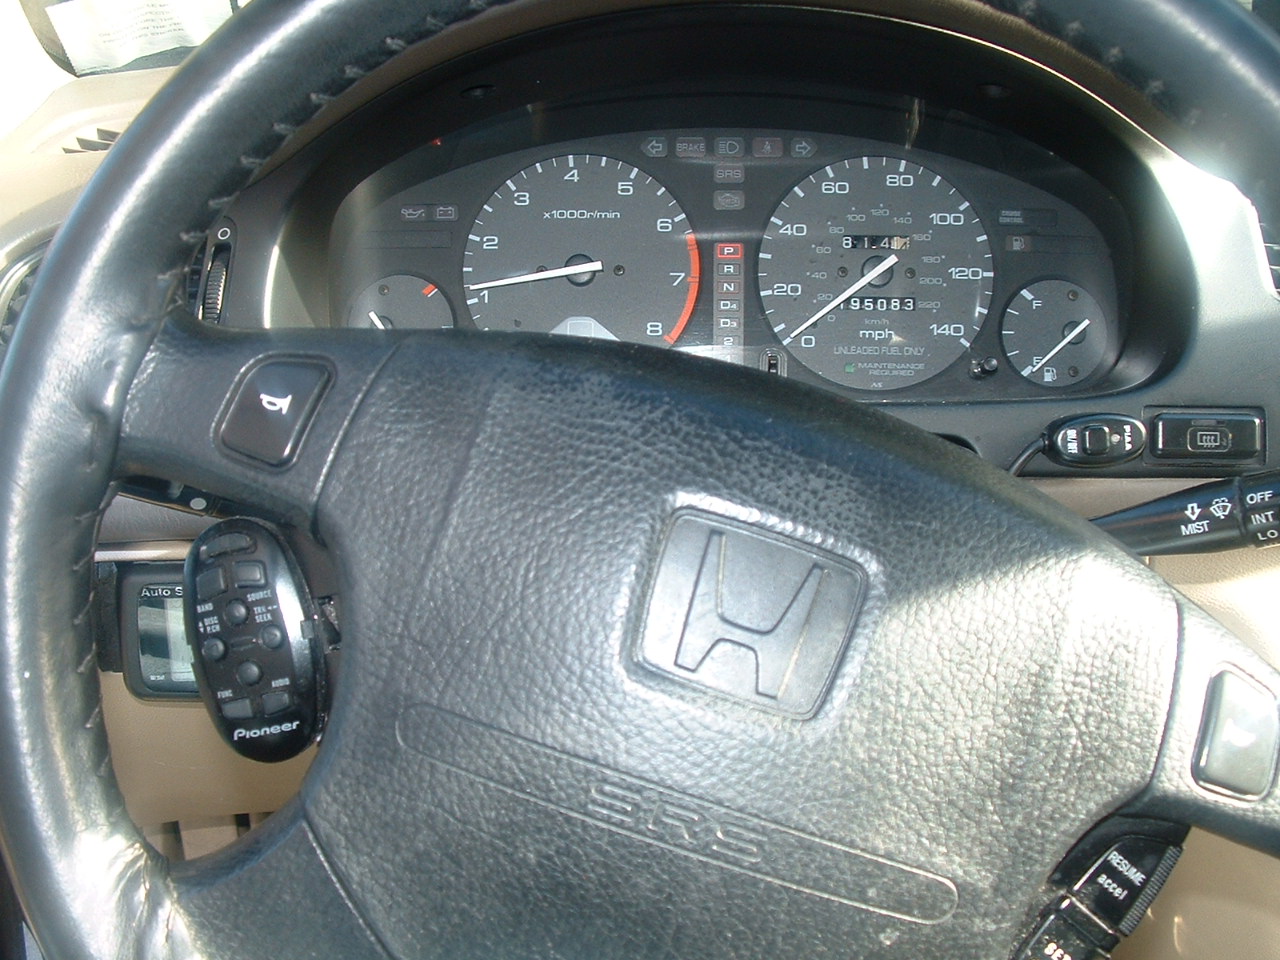 pioneer steering wheel remote